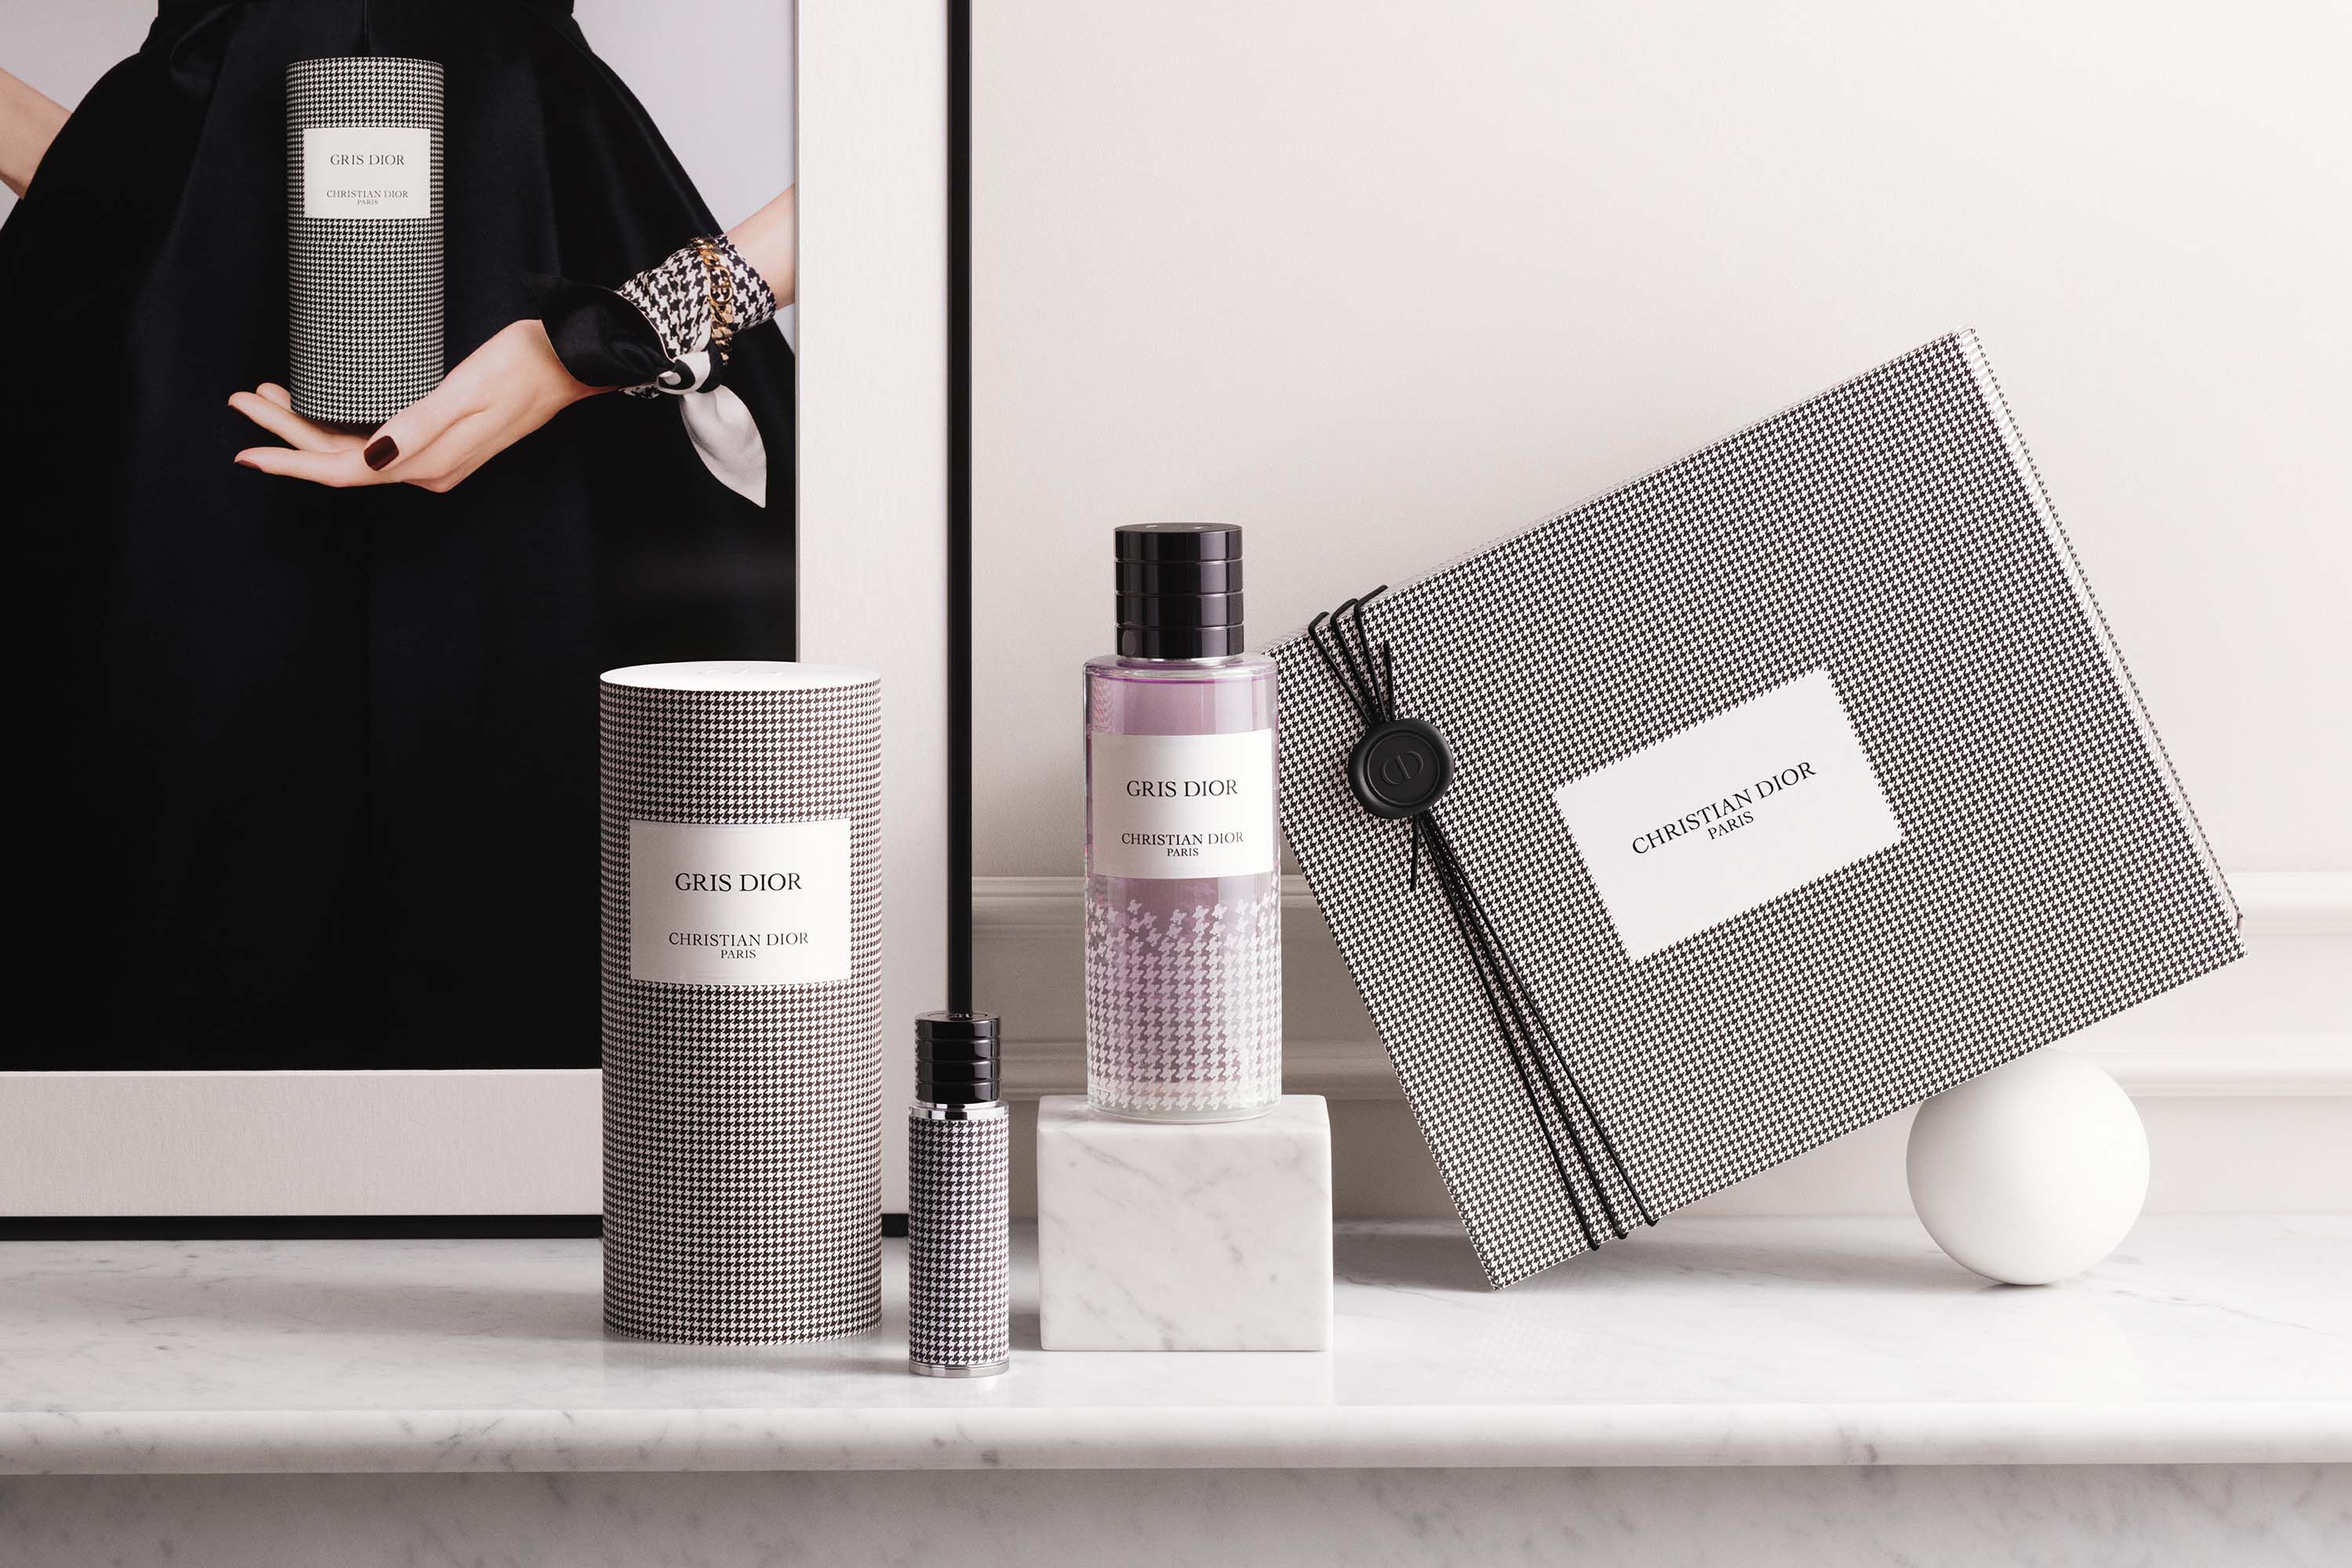 Dior - Gris Dior - New Look Limited Edition Eau de parfum - citrus and floral notes